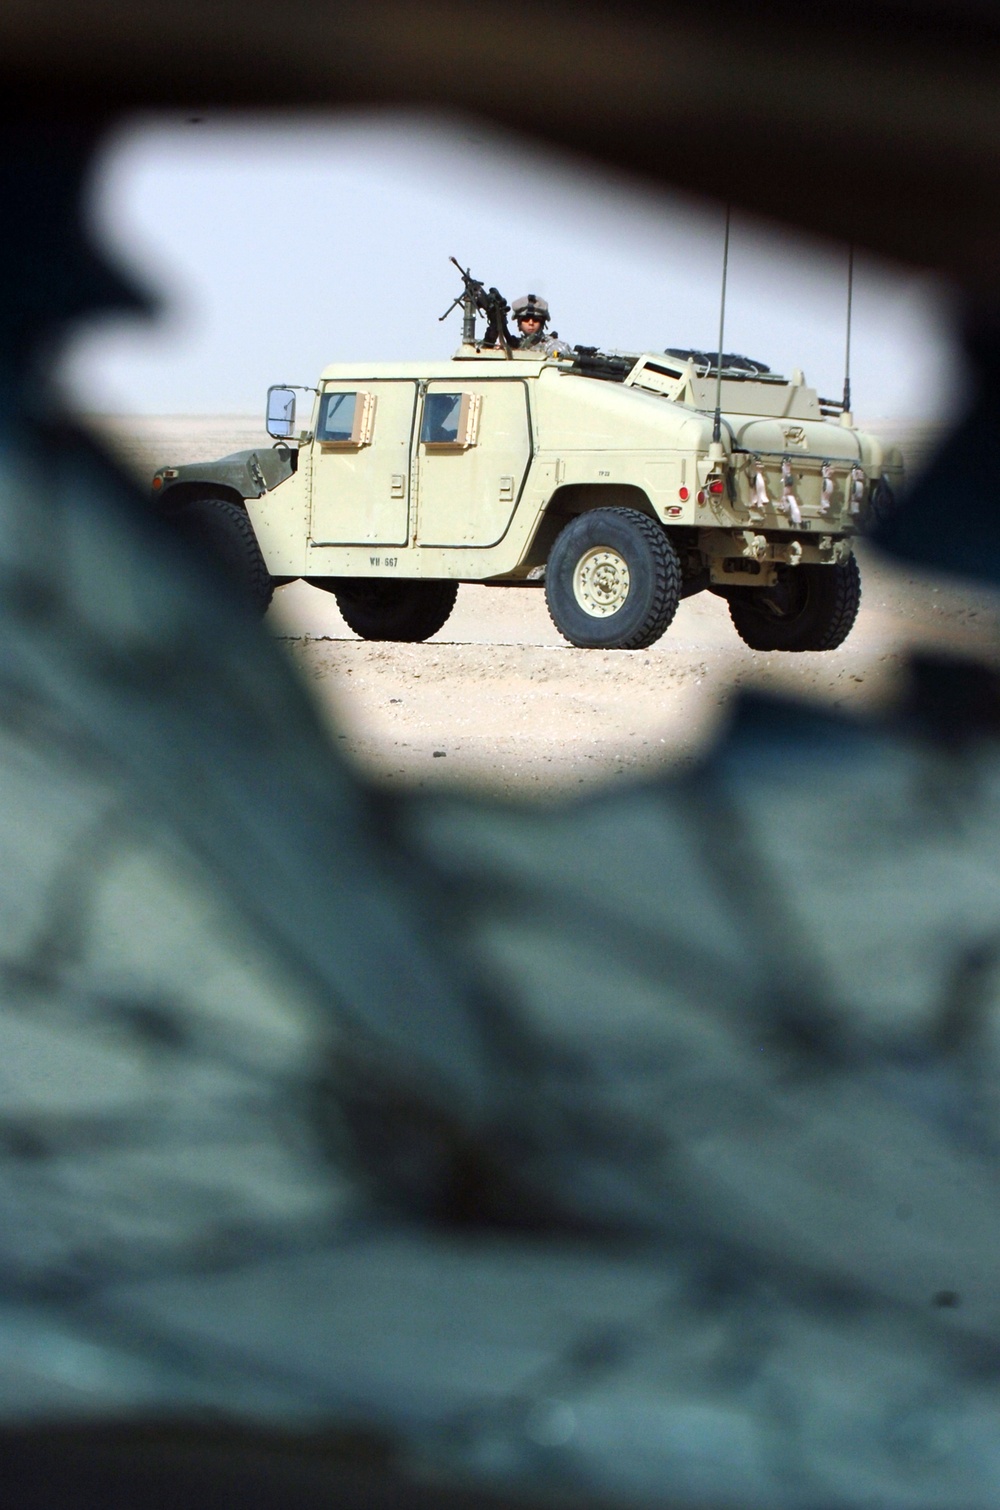 New equipment puts U.S. troops ahead of terrorists